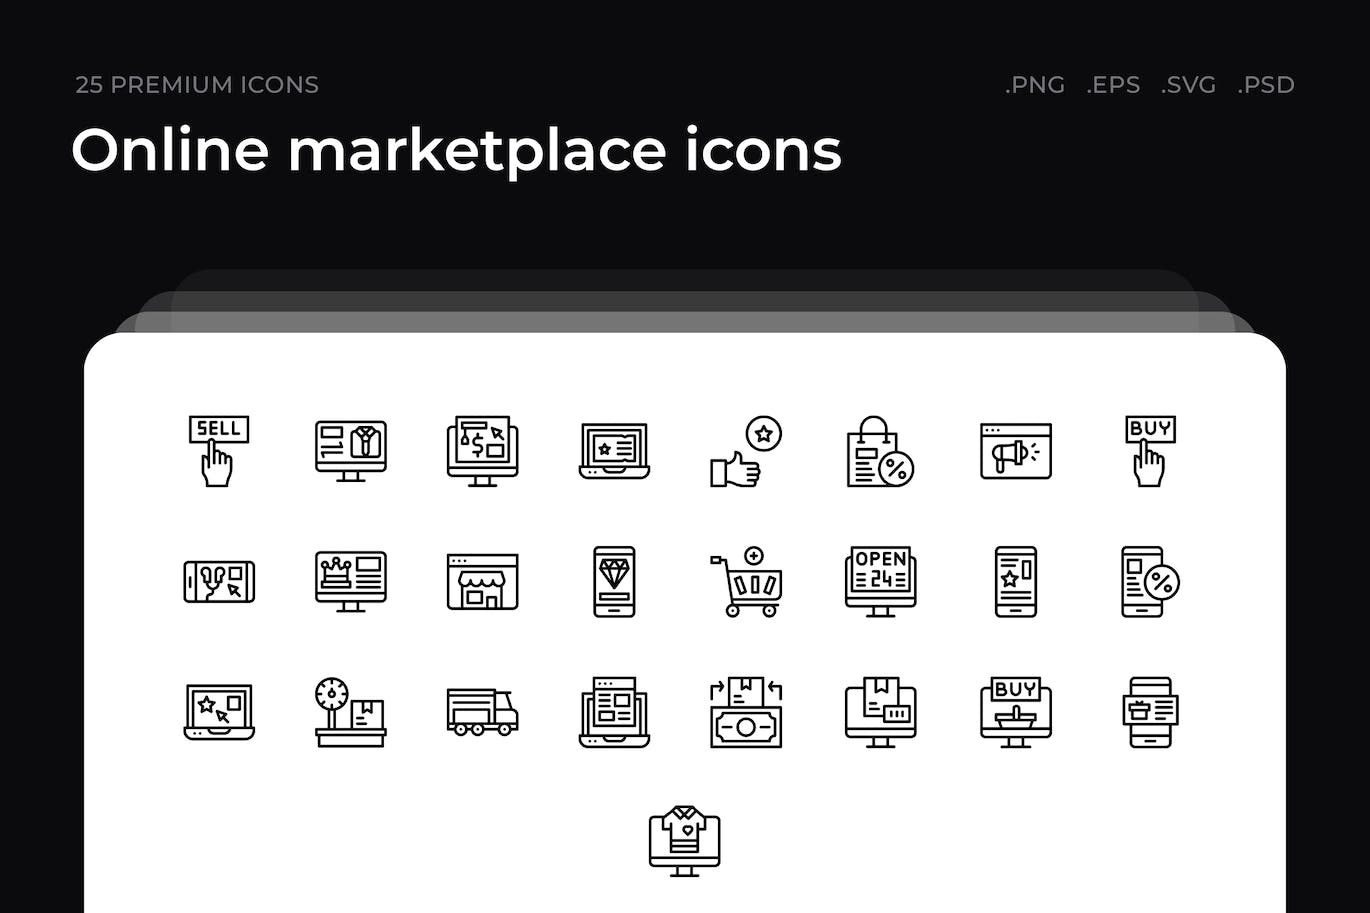 25枚在线市场主题简约线条矢量图标 Online marketplace icons 图标素材 第1张